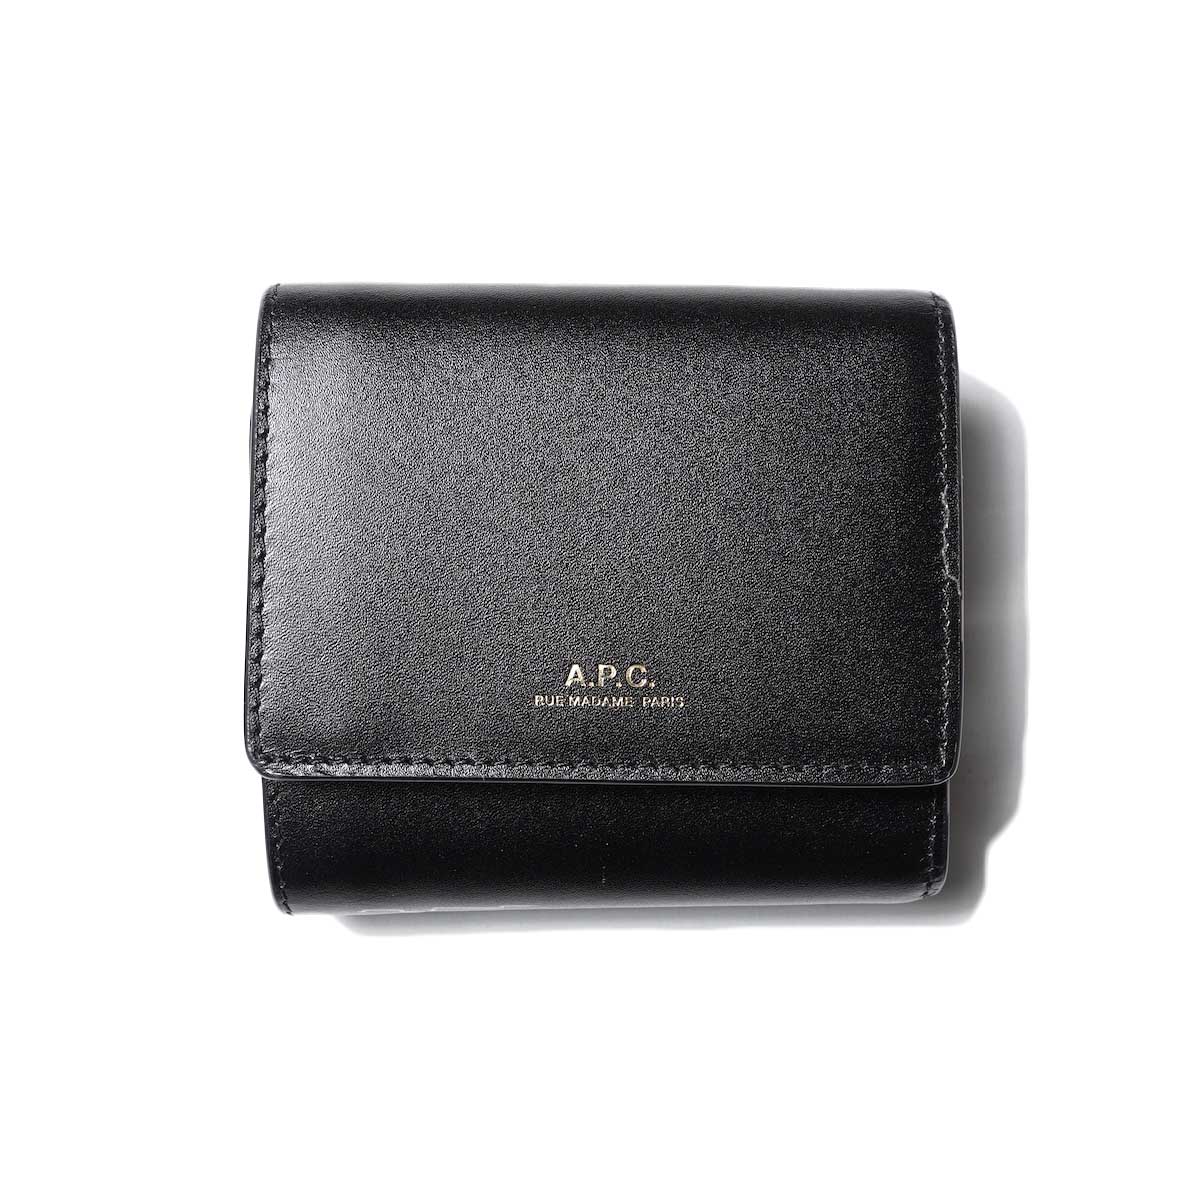 A.P.C. / Lois Compact Wallet (Black)